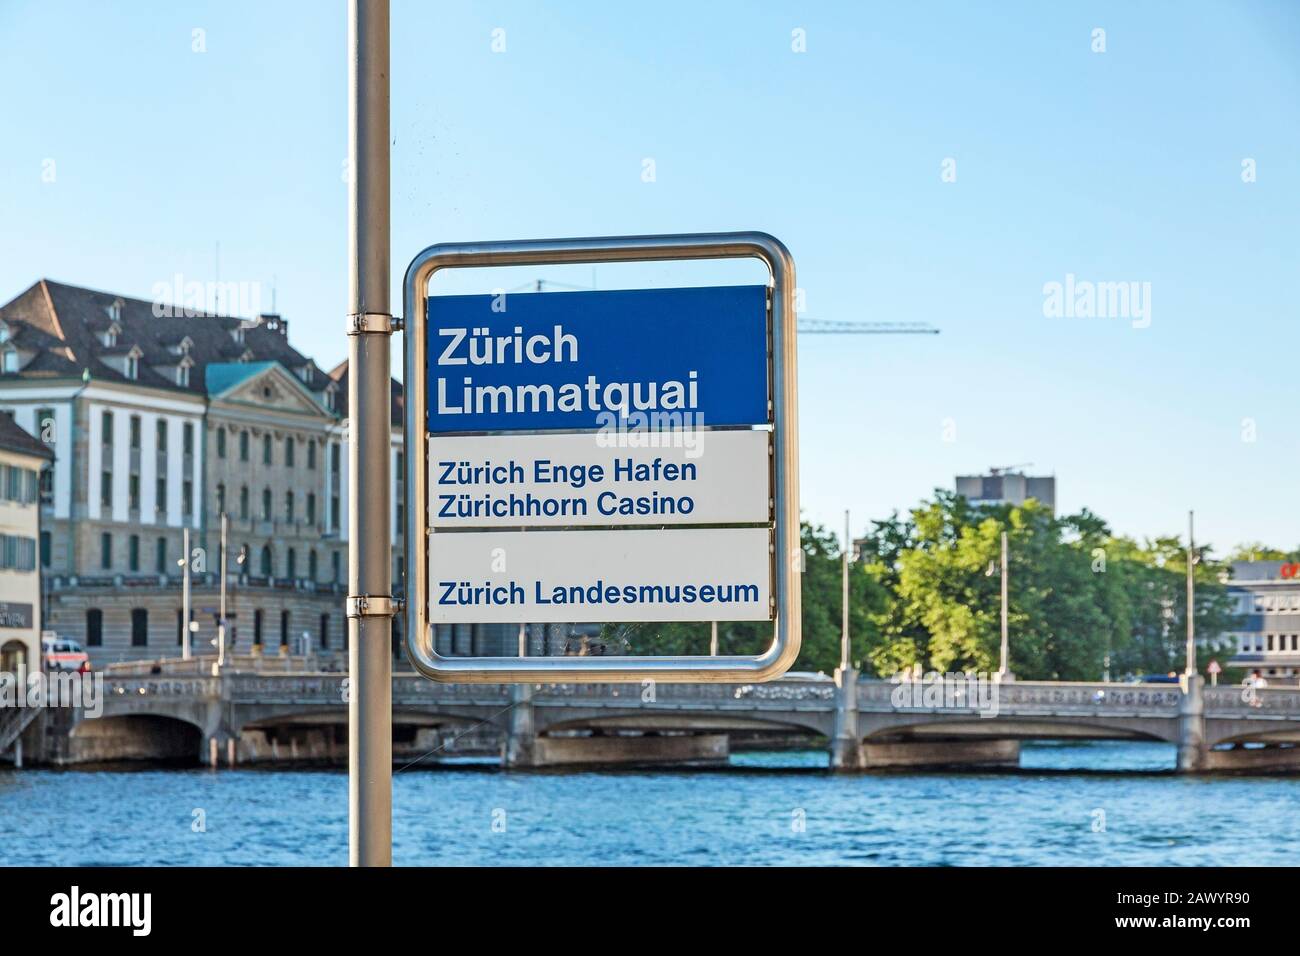 Zurich, Switzerland - June 10, 2017: Sign at Limmatquai near river Limmat signed with "Zurich Limmatquai" - Zurich port Enge "Zurich Enge Hafen" - Zur Stock Photo